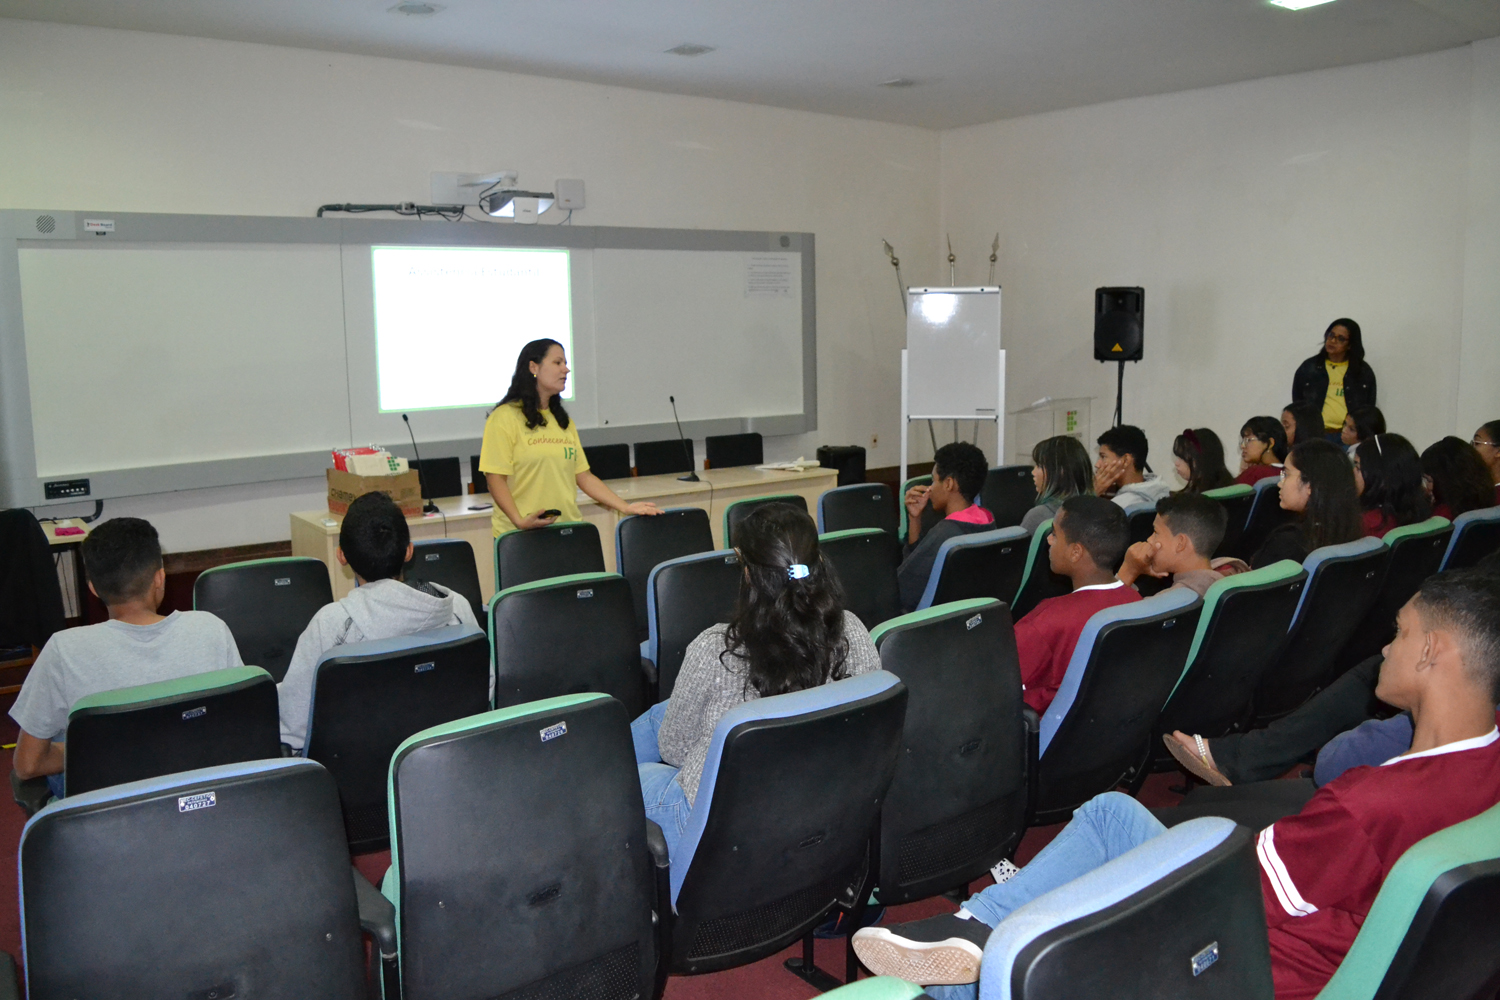 Coordenadora de Eventos do Câmpus Goiânia, Gleice de Sousa, recebe estudantes no projeto Conhecendo o IFG, no Câmpus Goiânia.